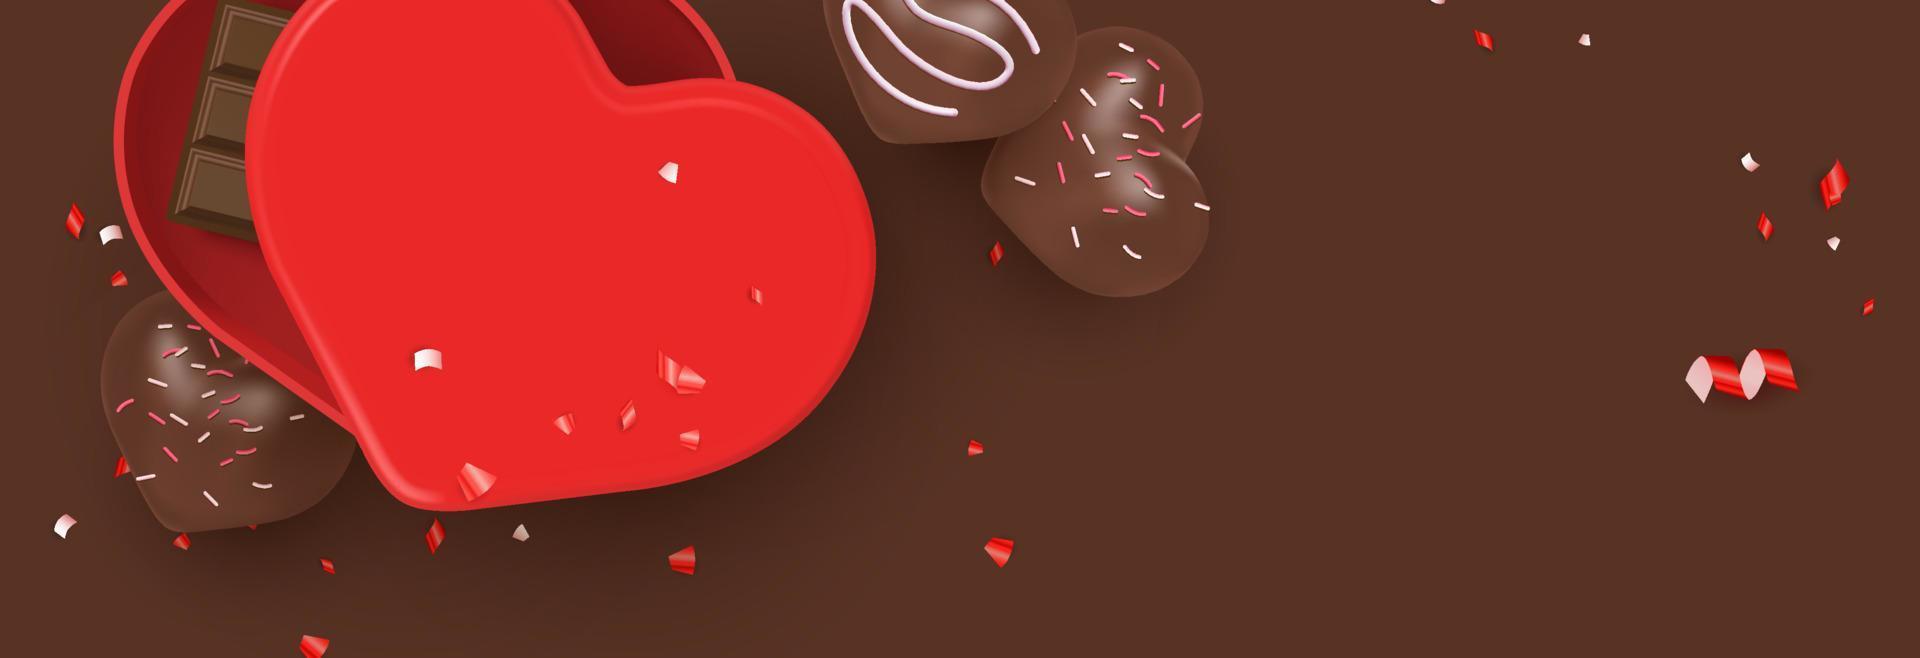 dulces de san valentín, postres, ilustración de chocolate banner de vista superior plana con plantilla de vector de espacio de copia